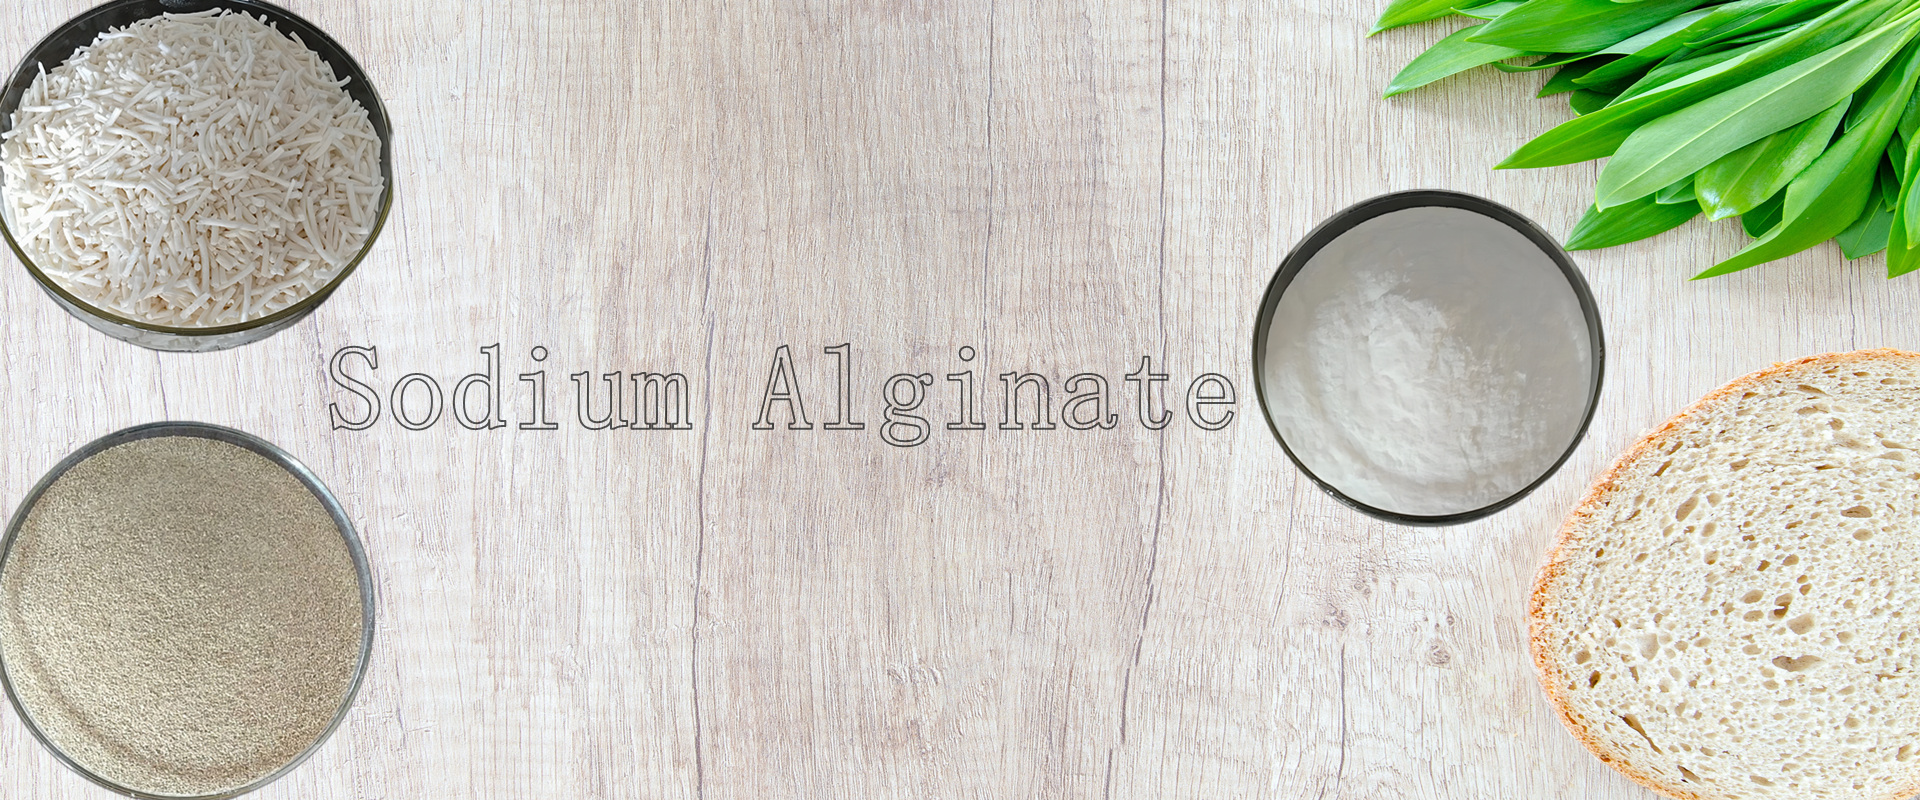 Sodium alginate